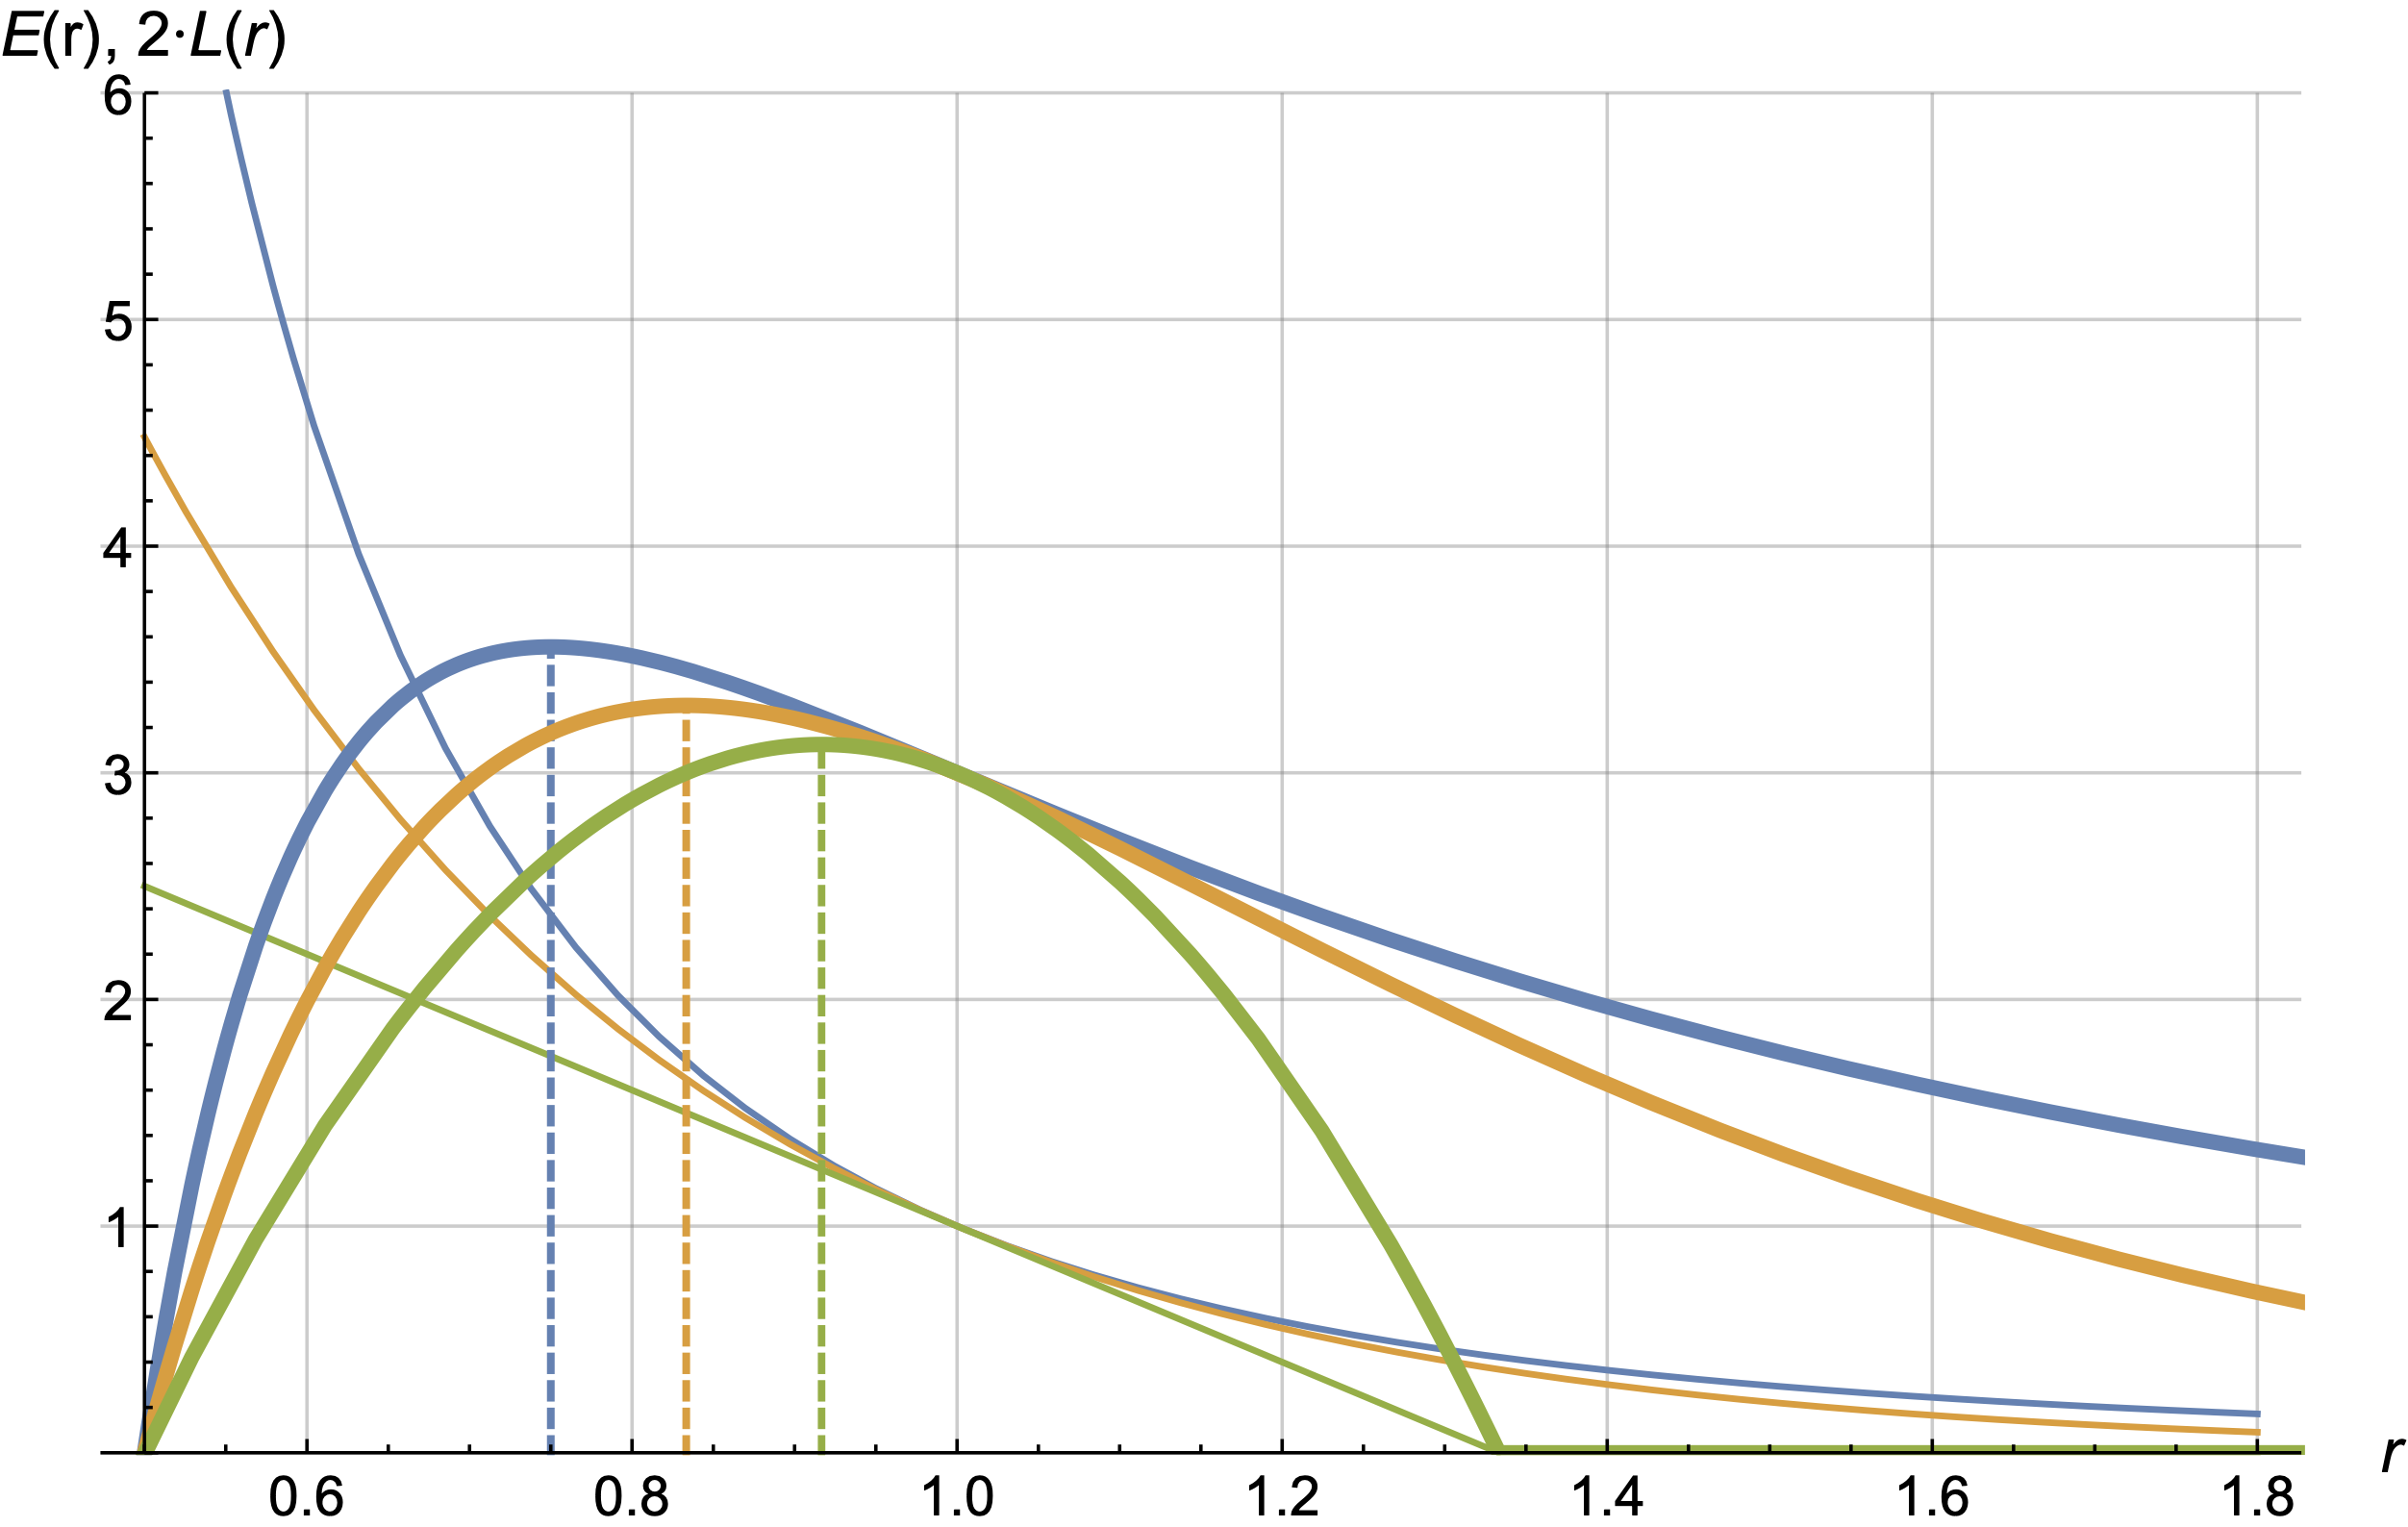 Графики E(r) и L(r) для трёх вариантов кривых:
степенная (синяя), экспоненциальная (жёлтая), линейная (зелёная).
λ = 2 , slope = 3, c = 0.75